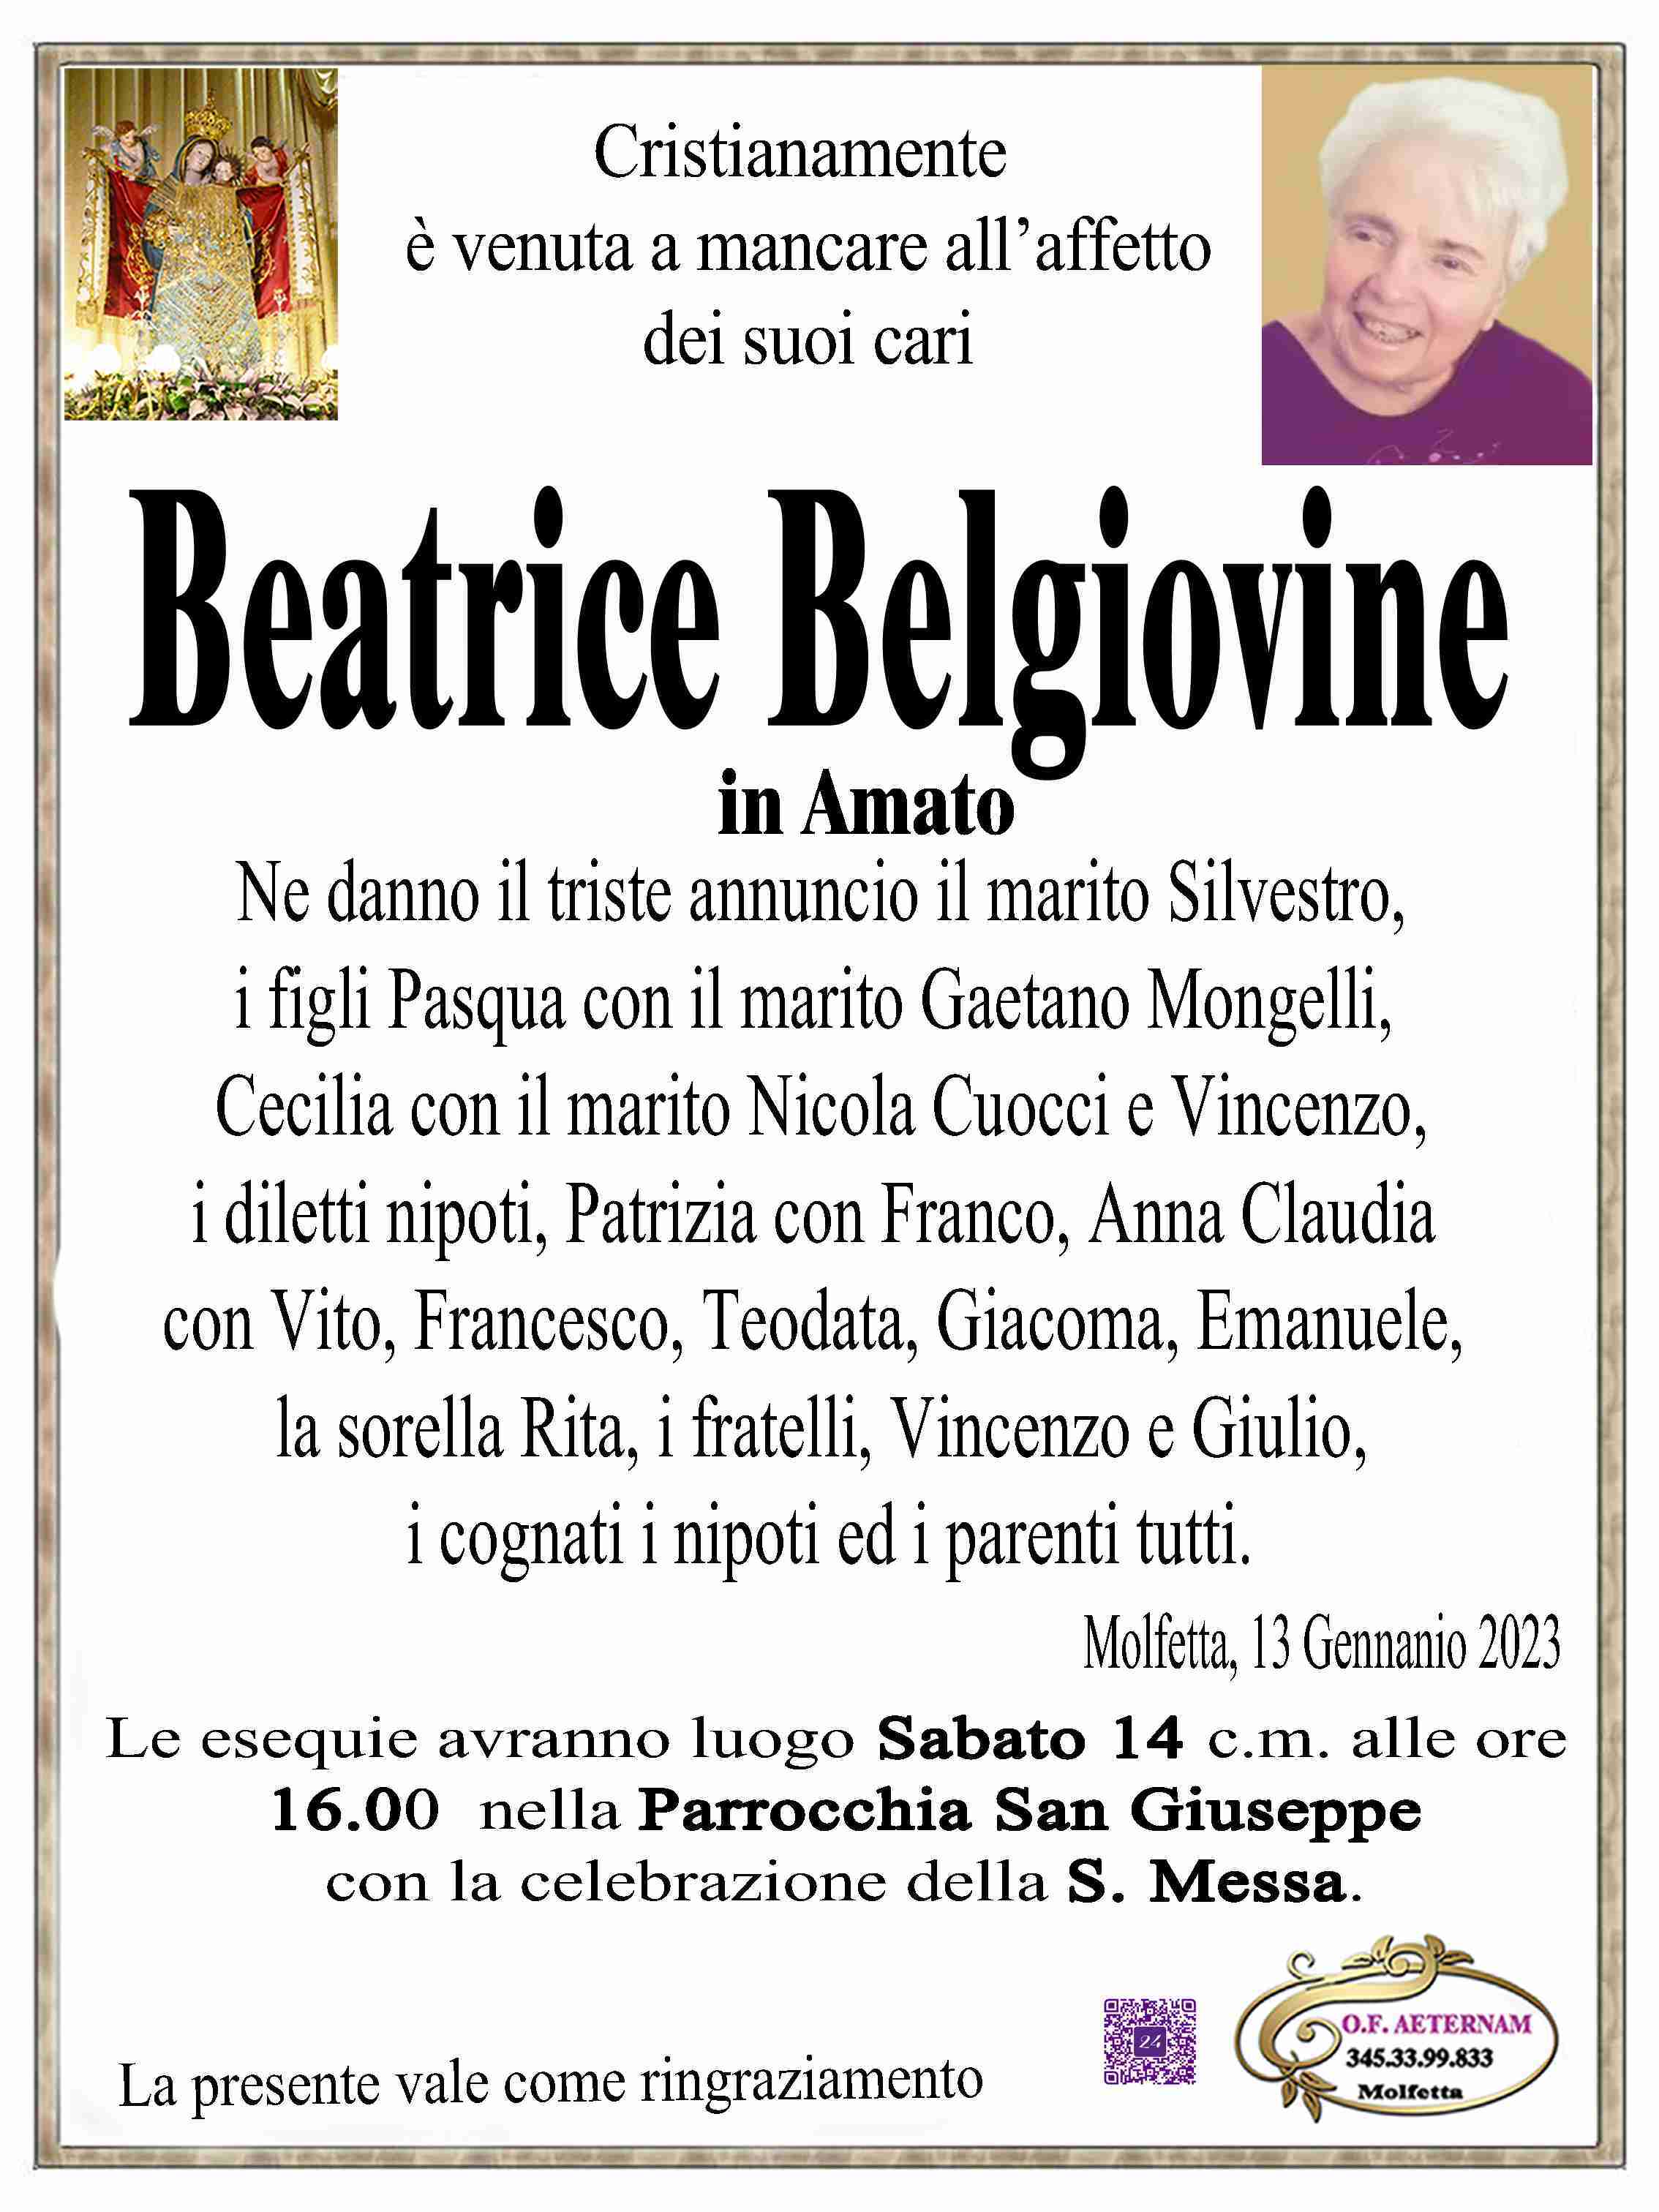 Beatrice Belgiovine